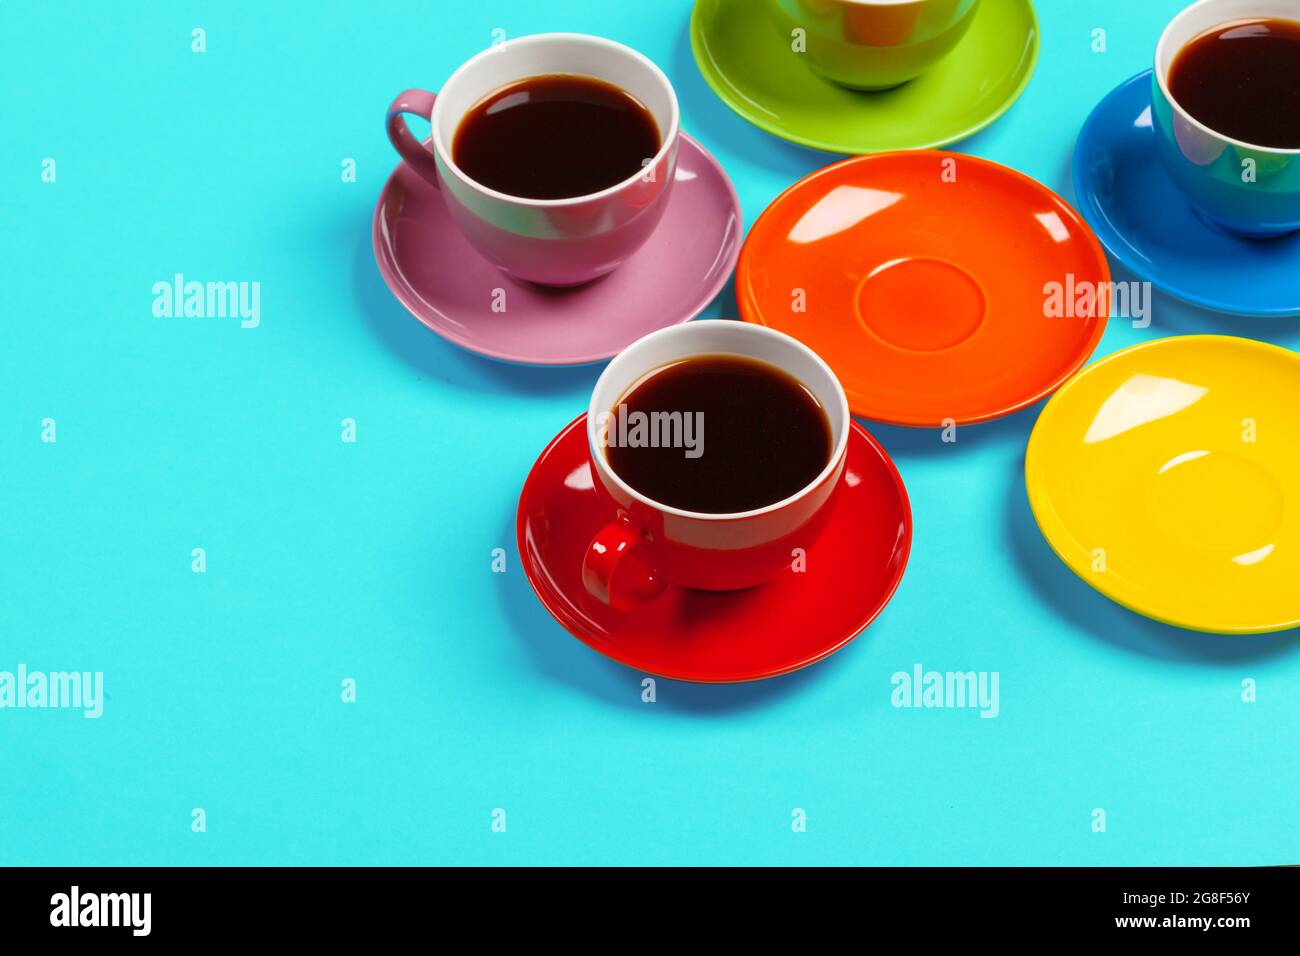 Bunte Kaffeetassen und Untertasse auf farbenfrohem Hintergrund  Stockfotografie - Alamy